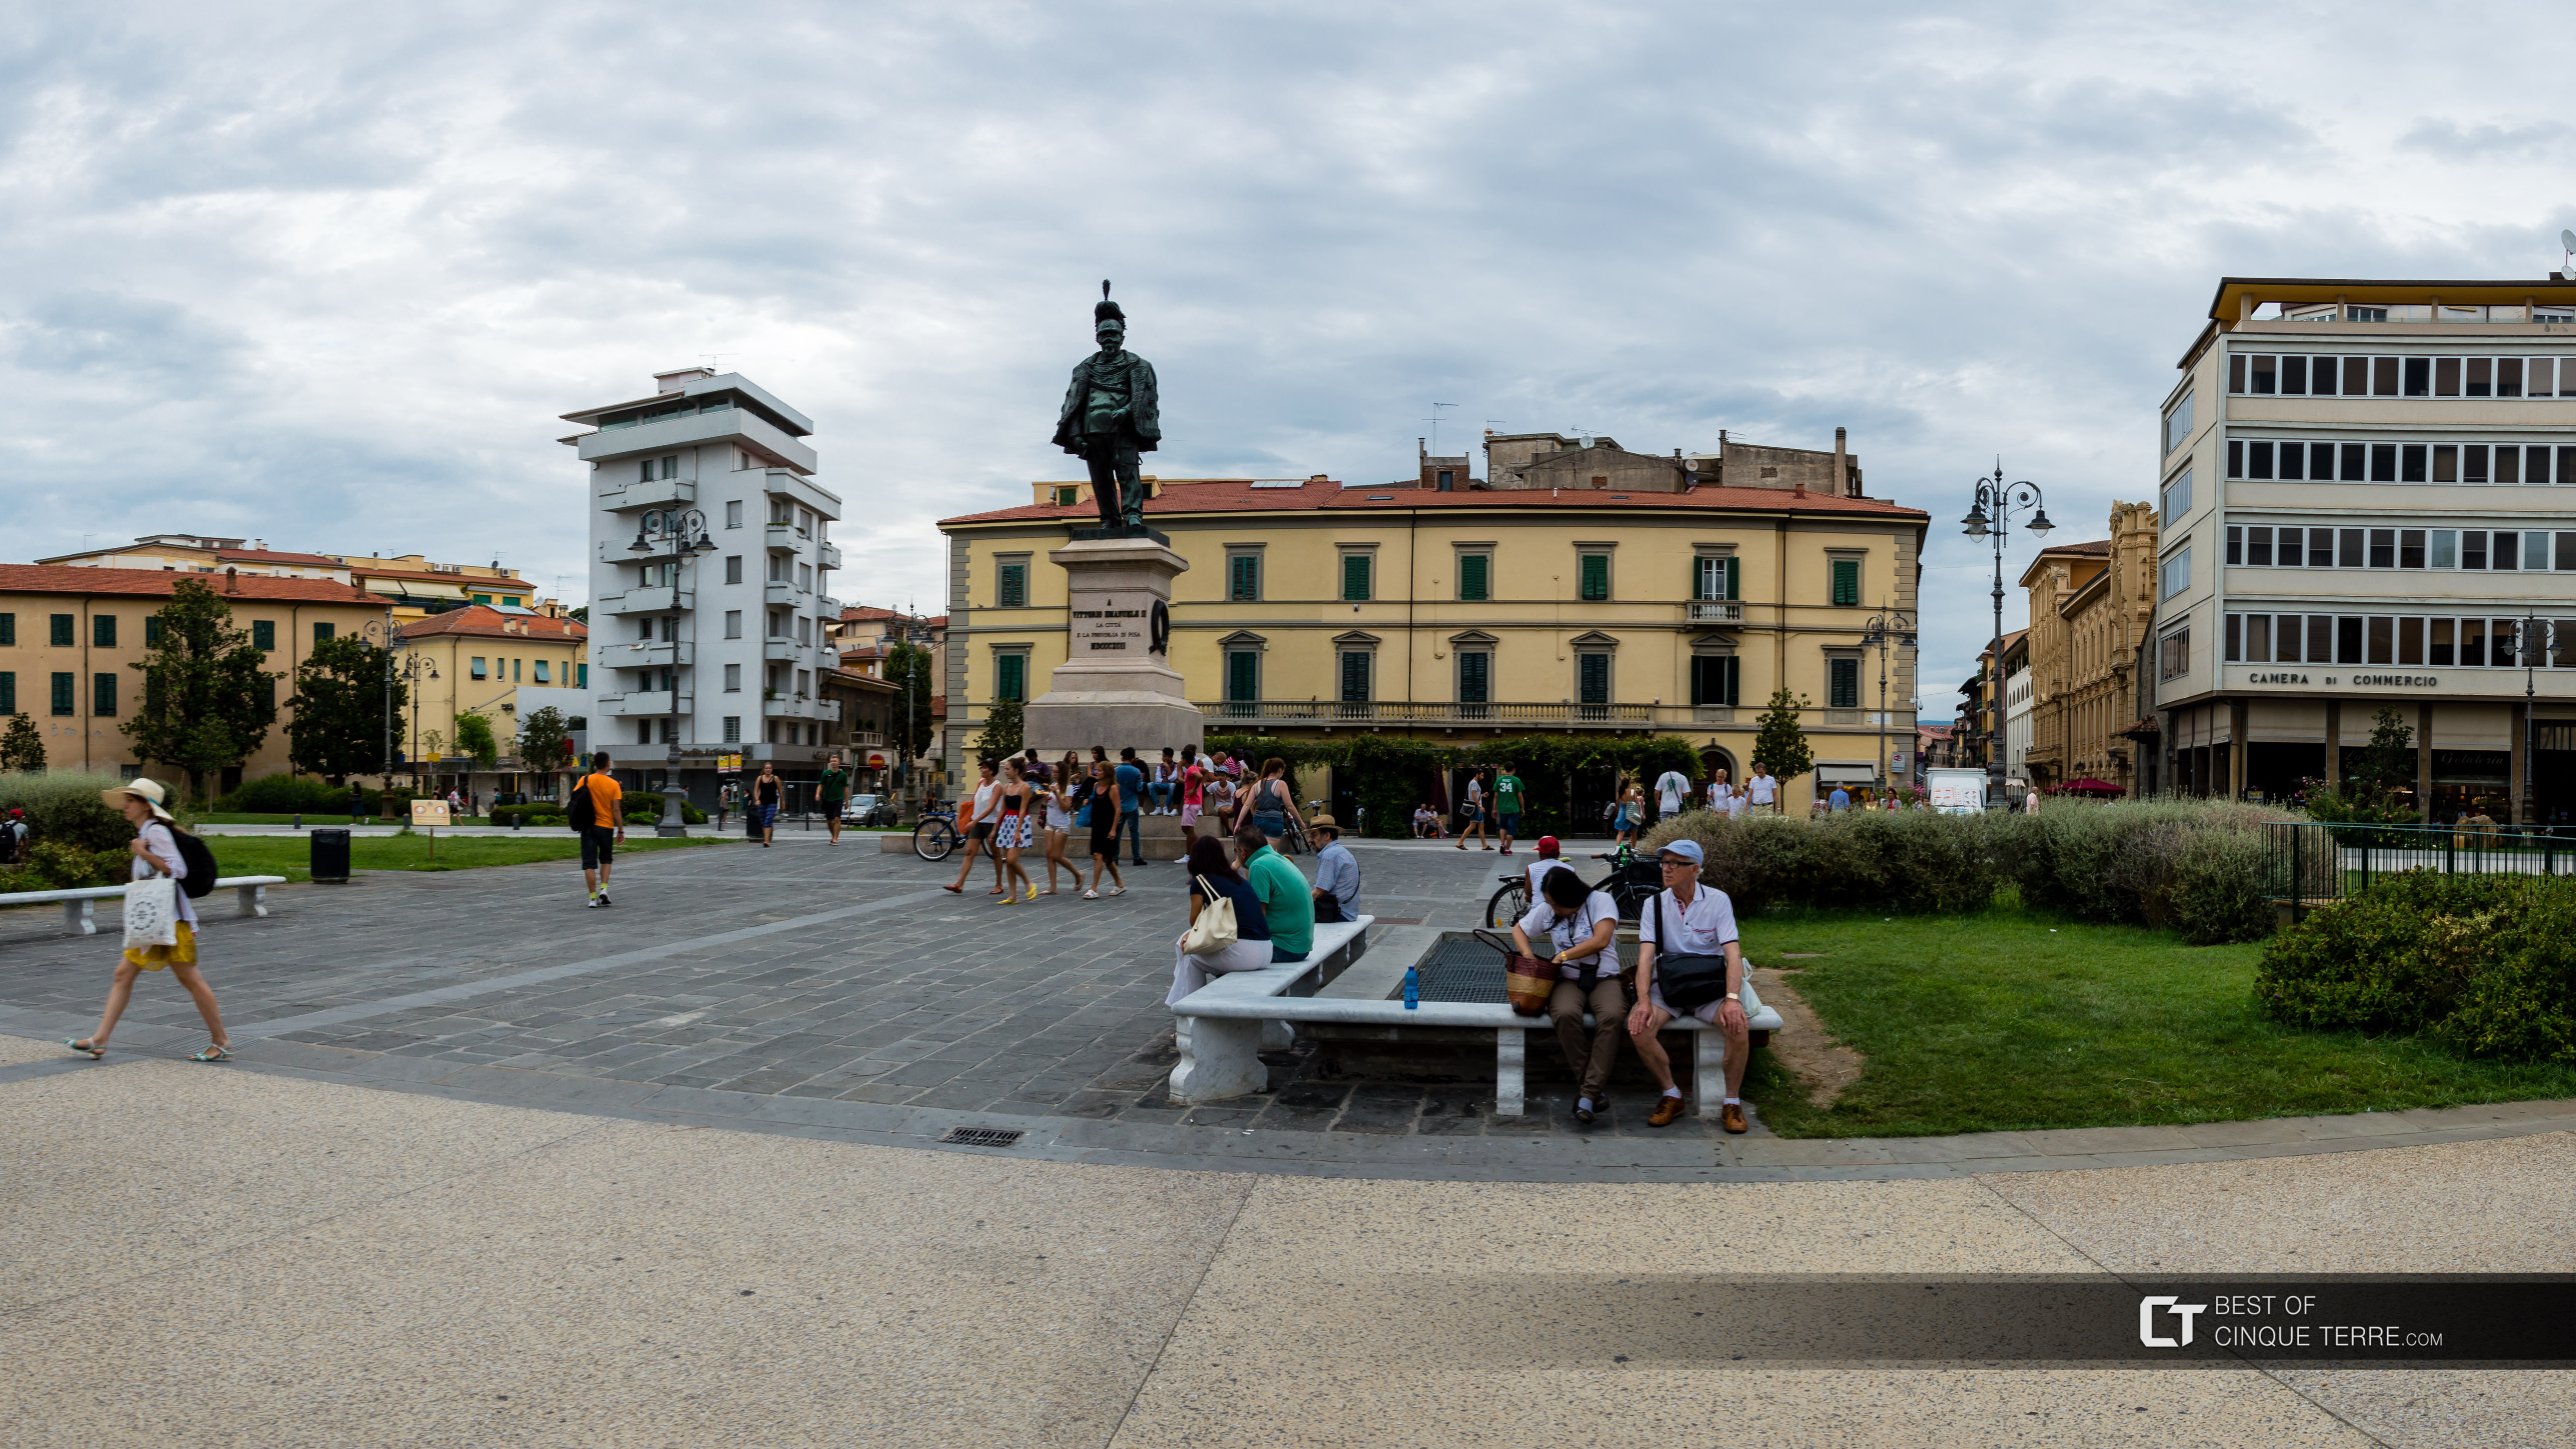 Площадь Виктора Эммануила II, Пиза, Италия